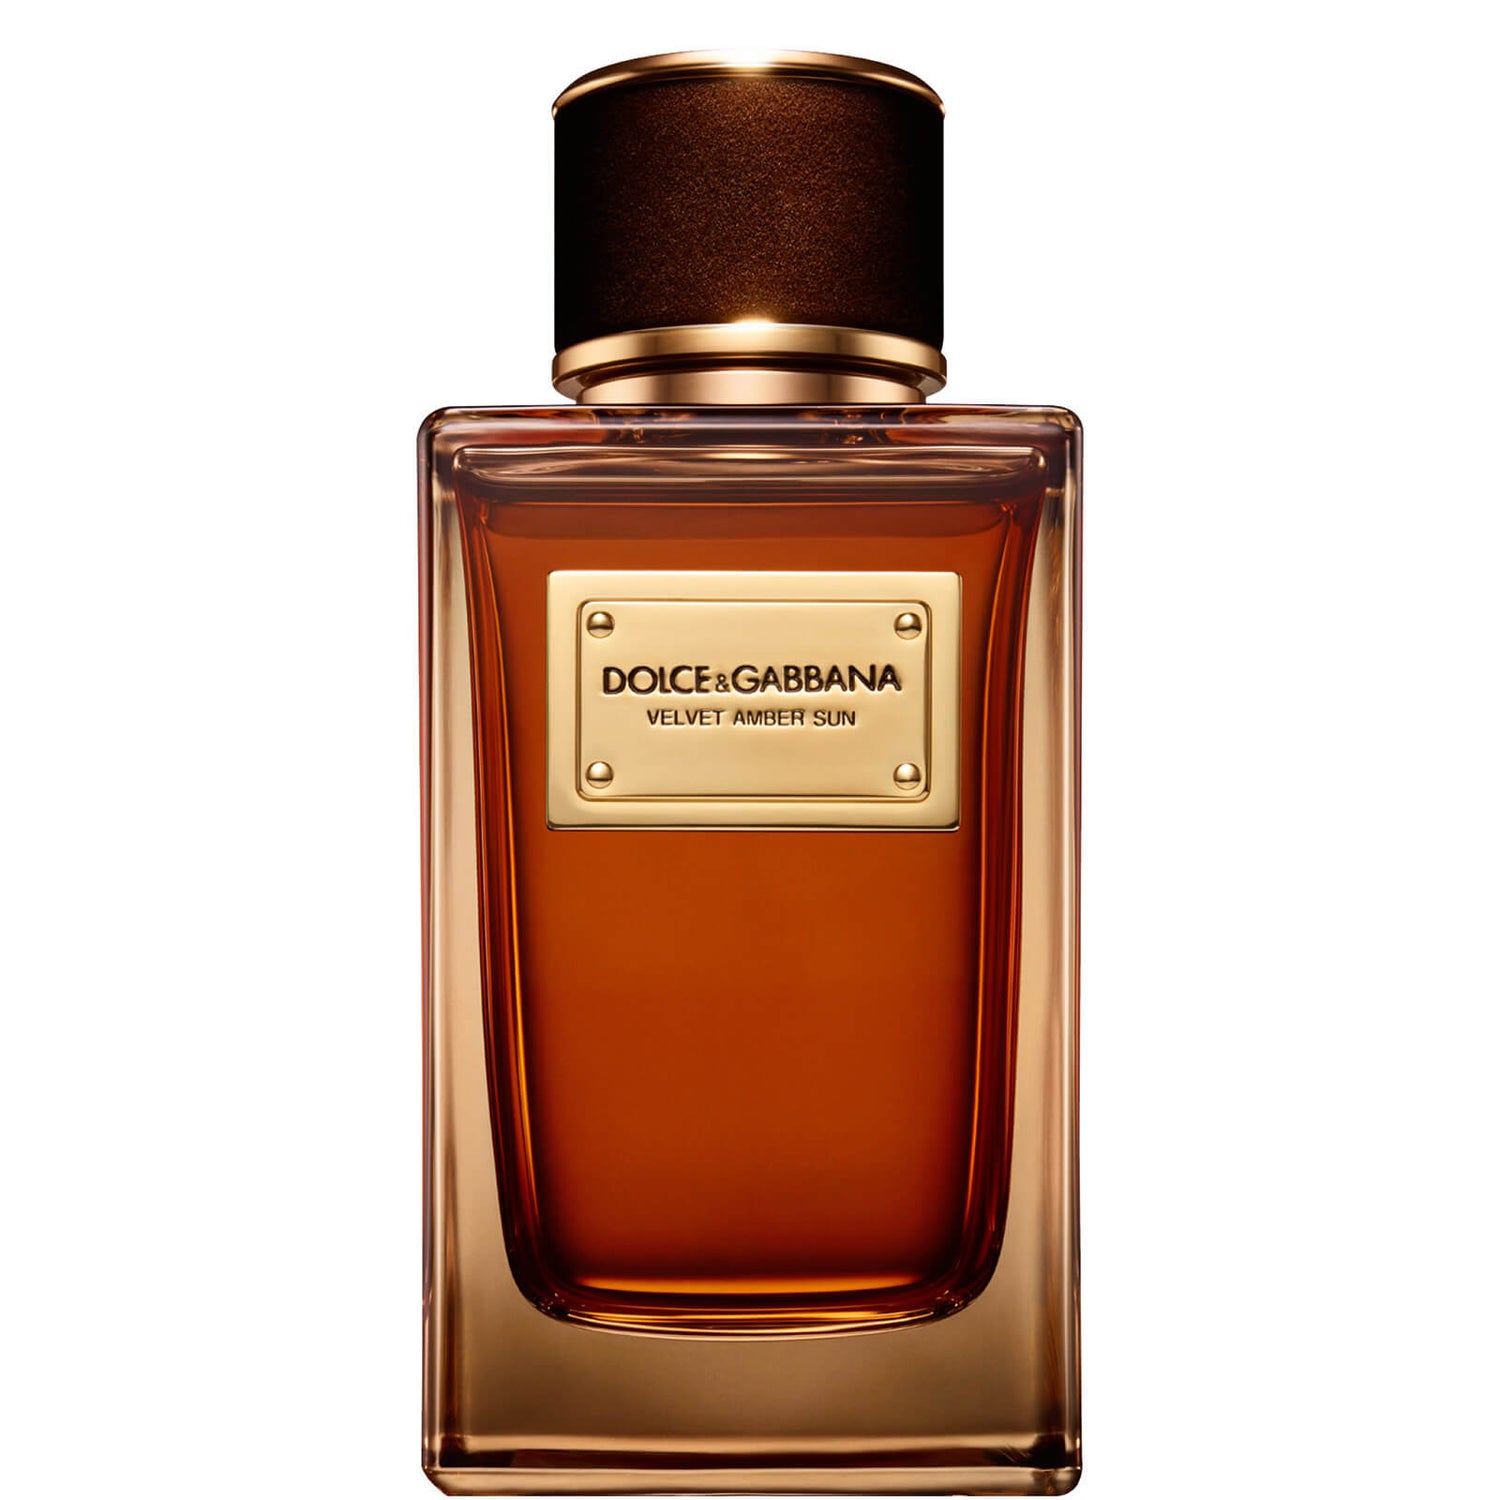 Dolce&Gabbana Velvet Amber Sun Eau de Parfum - 150ml Dolce&Gabbana Velvet Amber Sun parfémovaná voda - 150 ml